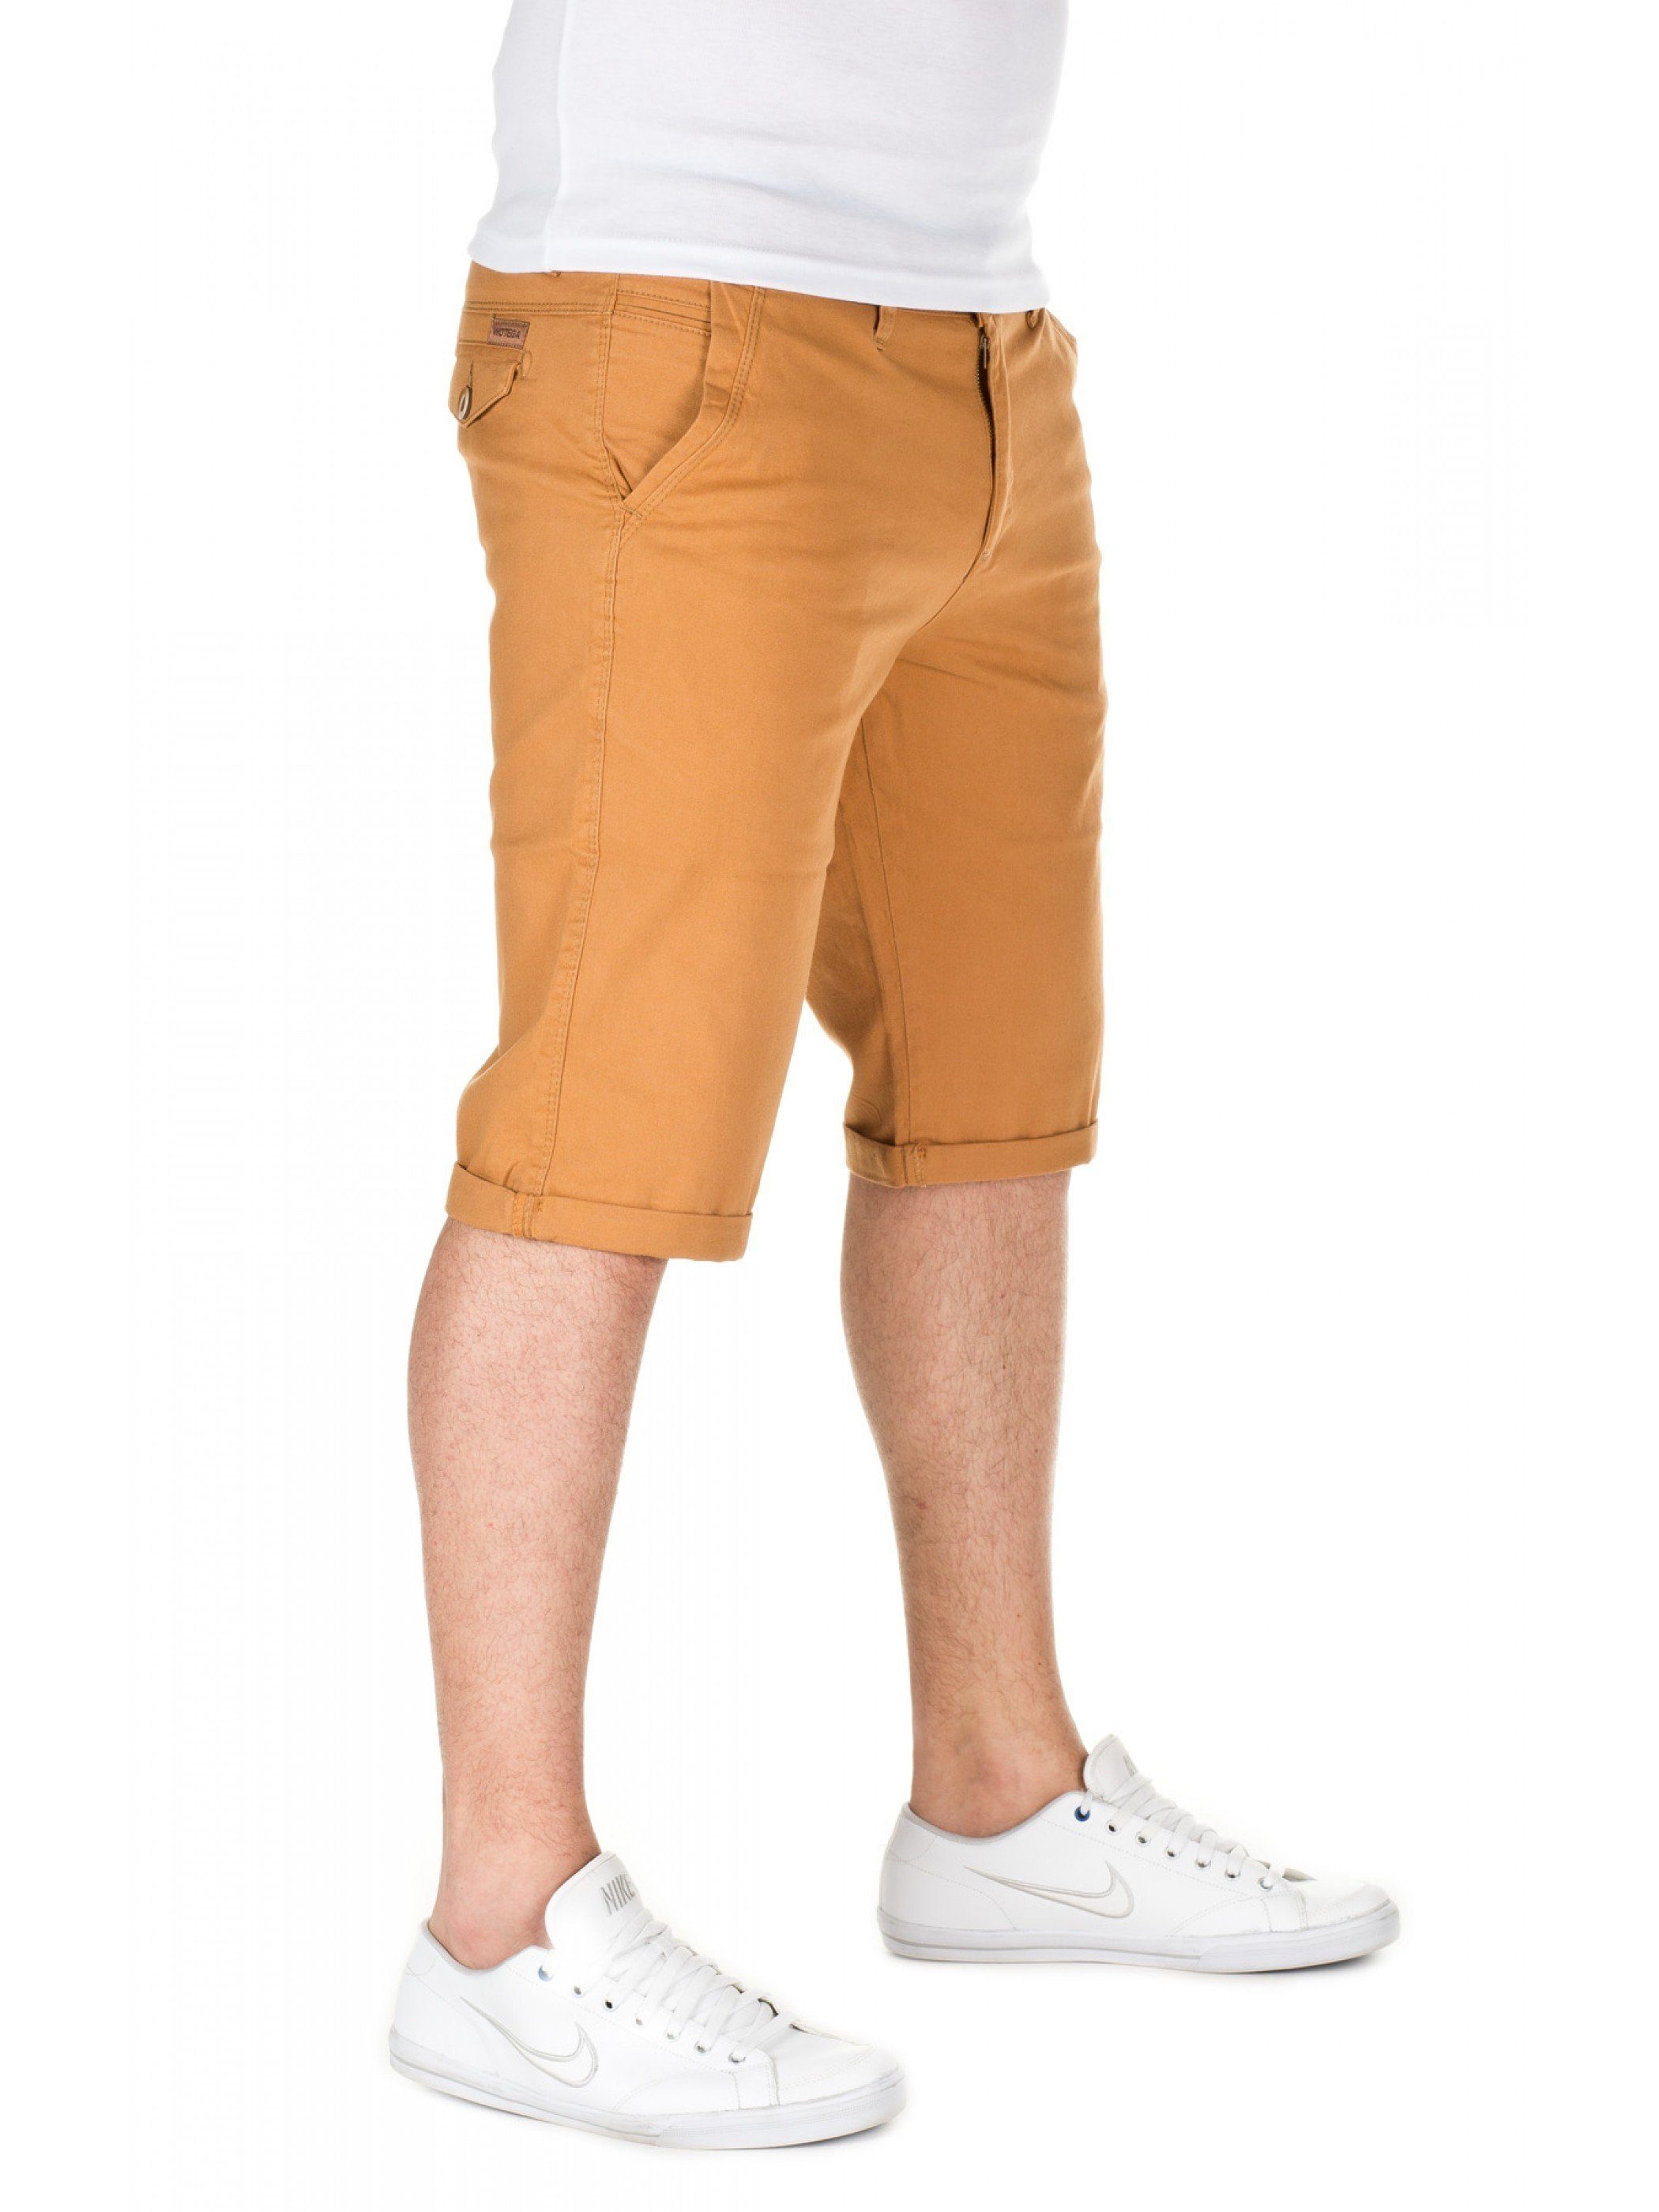 WOTEGA Shorts gold Alex - shorts (mustard WOTEGA Chino 82295) in Unifarbe Goldfarben